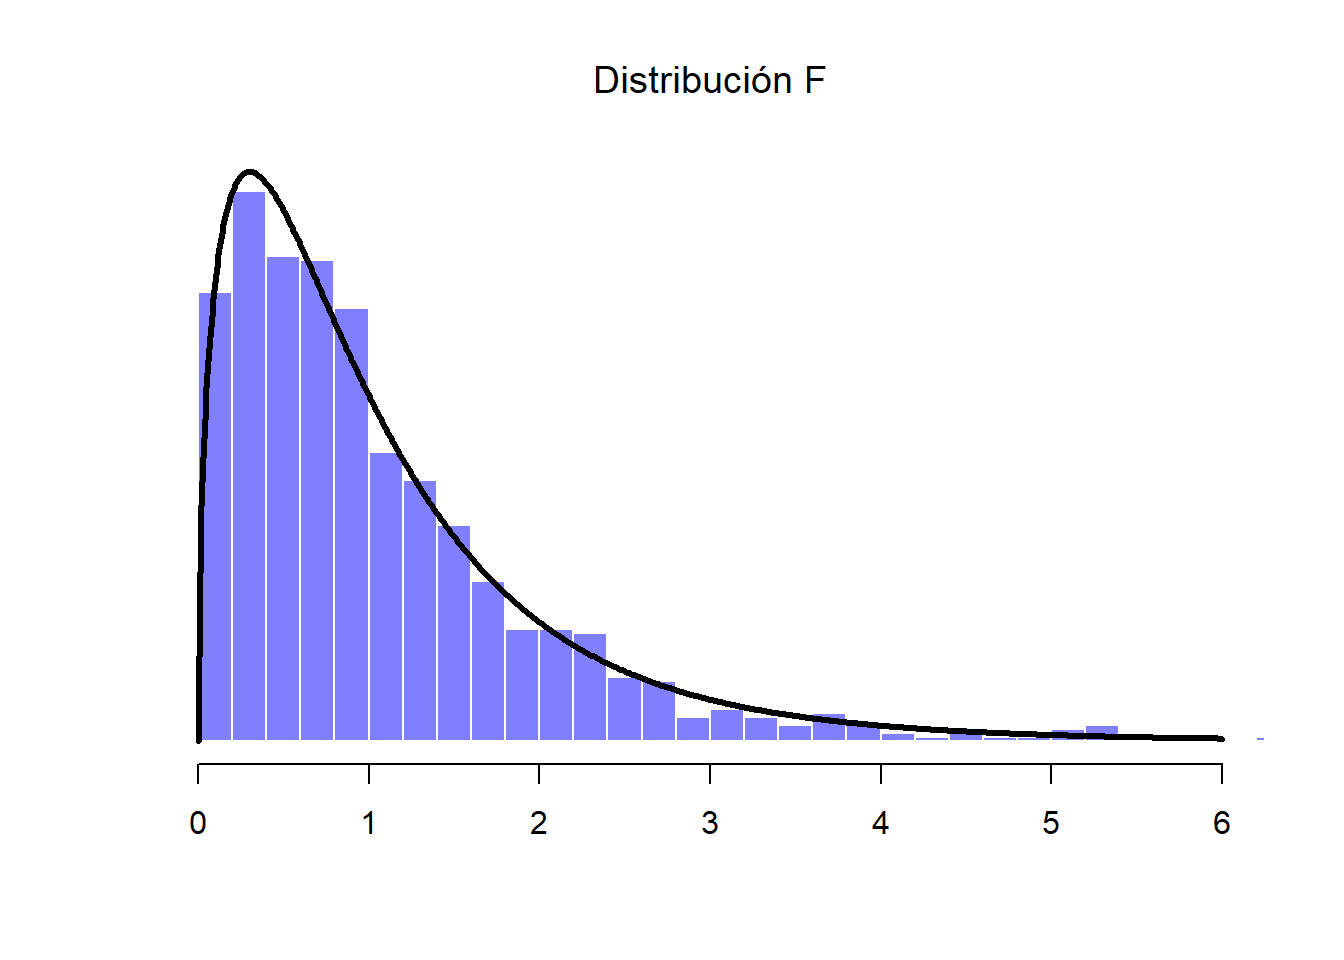 Distribución F. En este ejemplo hipotético, se compara la distribución chi-cuadrada de 3 grados de libertad previa con otra distribución chi-cuadrada con 20 grados de libertad (es decir, que incluye 20 muestras o variables)